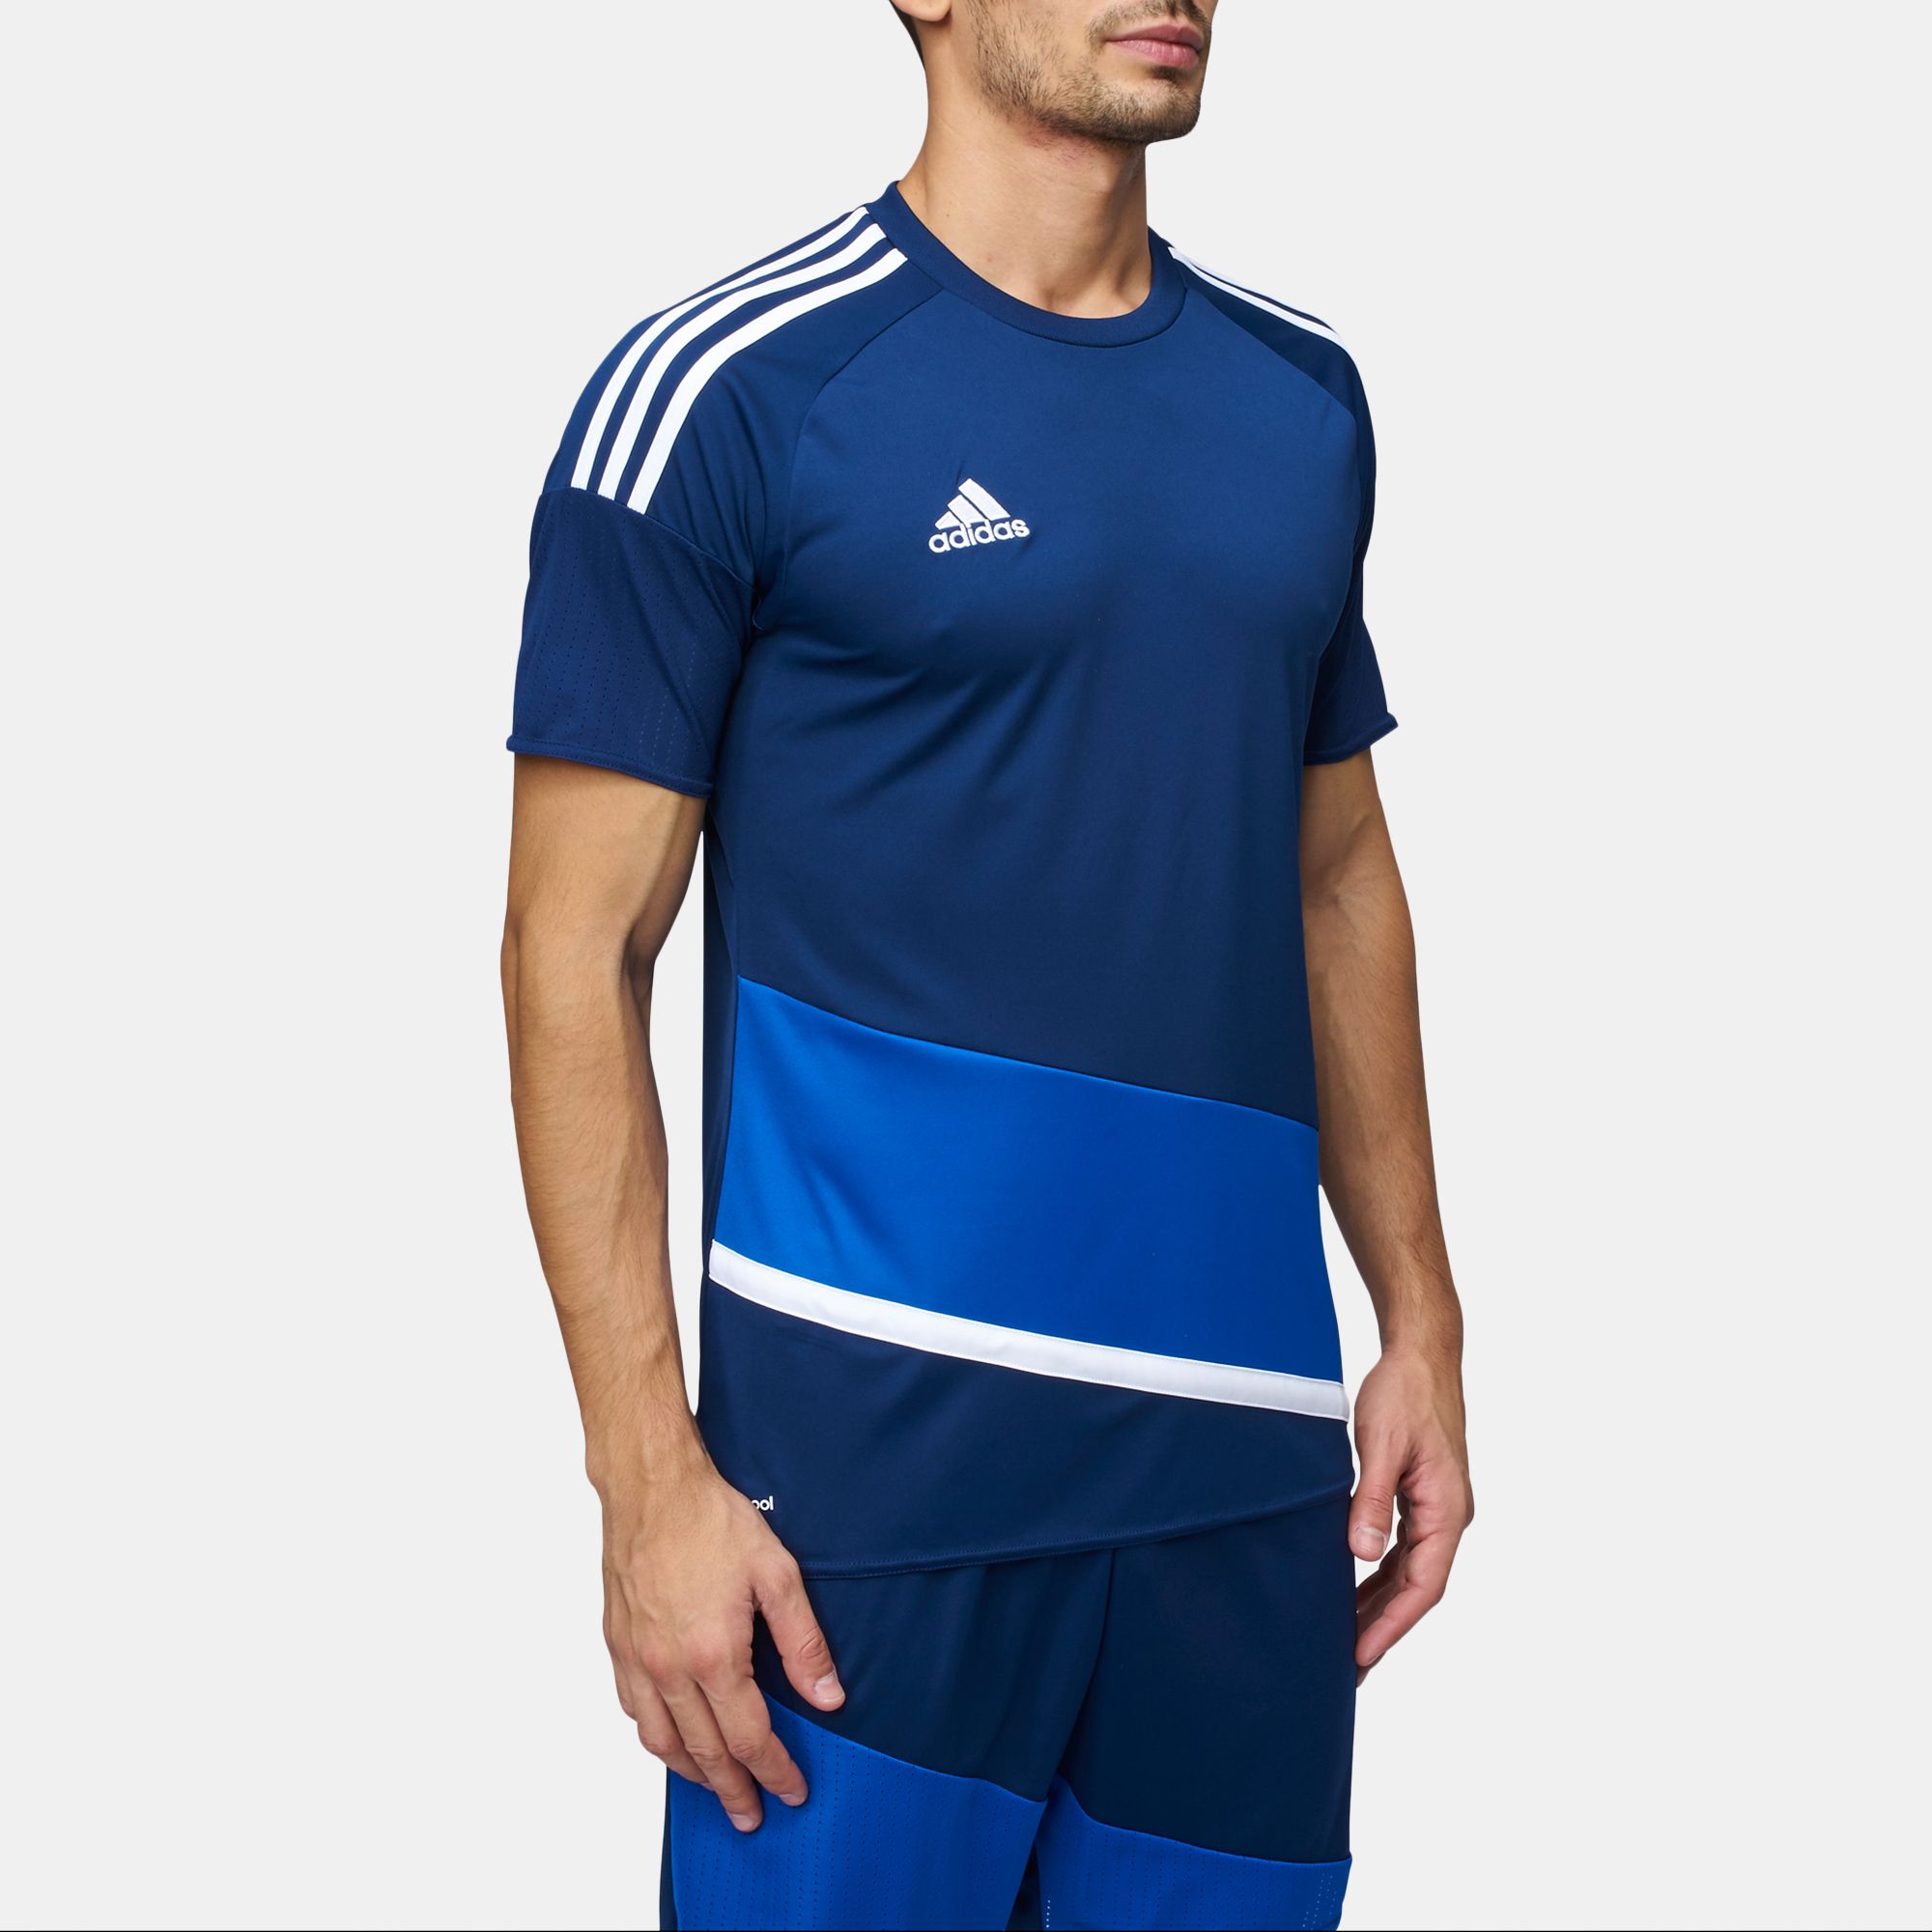 Adidas Regista 16 Mens Soccer Jersey Sporting Goods Men's Soccer ...